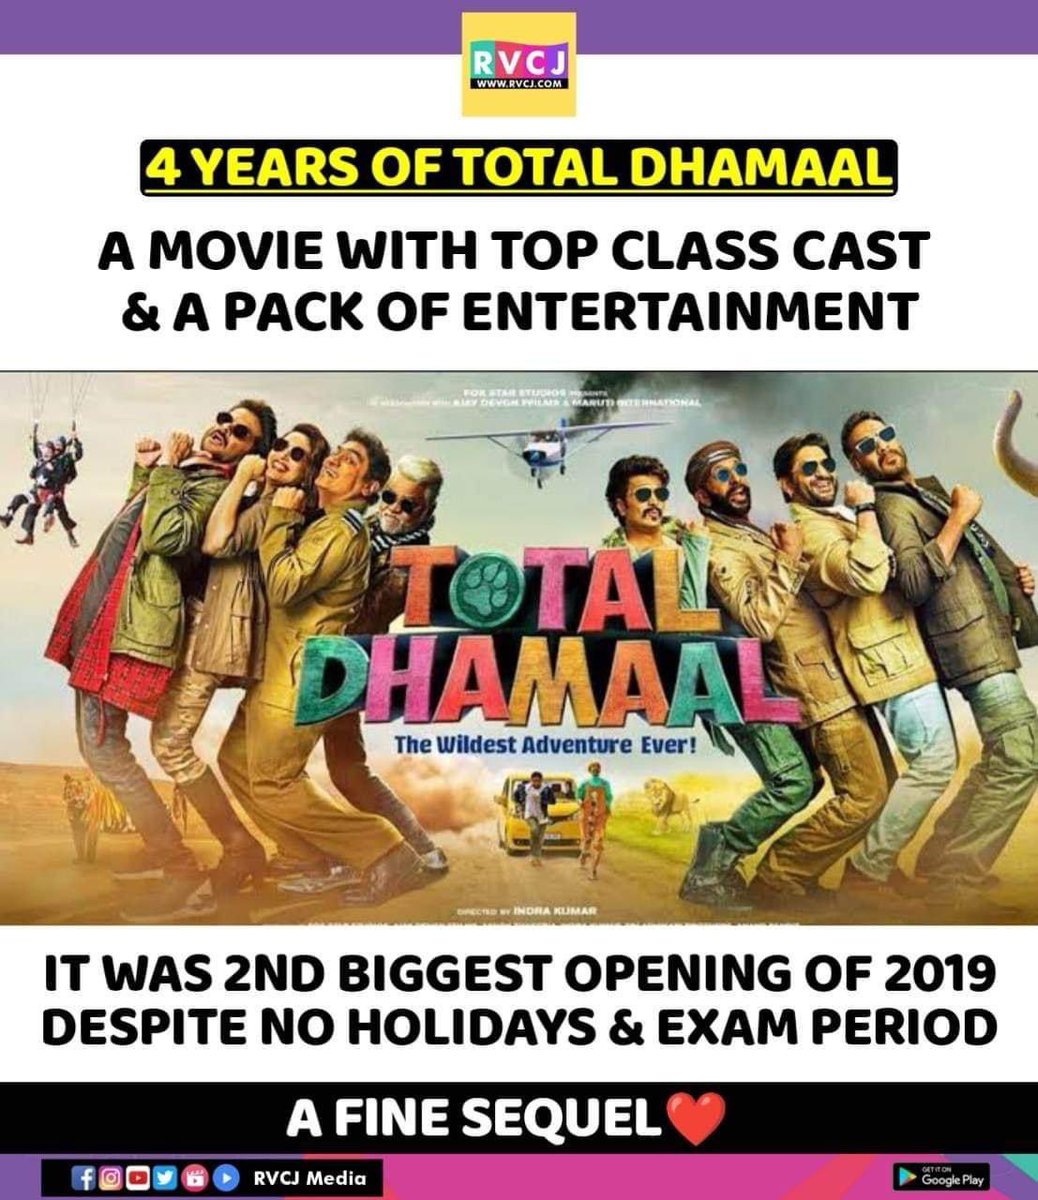 4 Years of Total Dhamaal!
#totaldhamaal #ajaydevgn #anilkapoor #arshadwarsi #jaavedjaaferi #riteishdeshmukh #madhuridixit #johnylever #sanjaymishra #indrakumar #bollywood #rvcjmovies